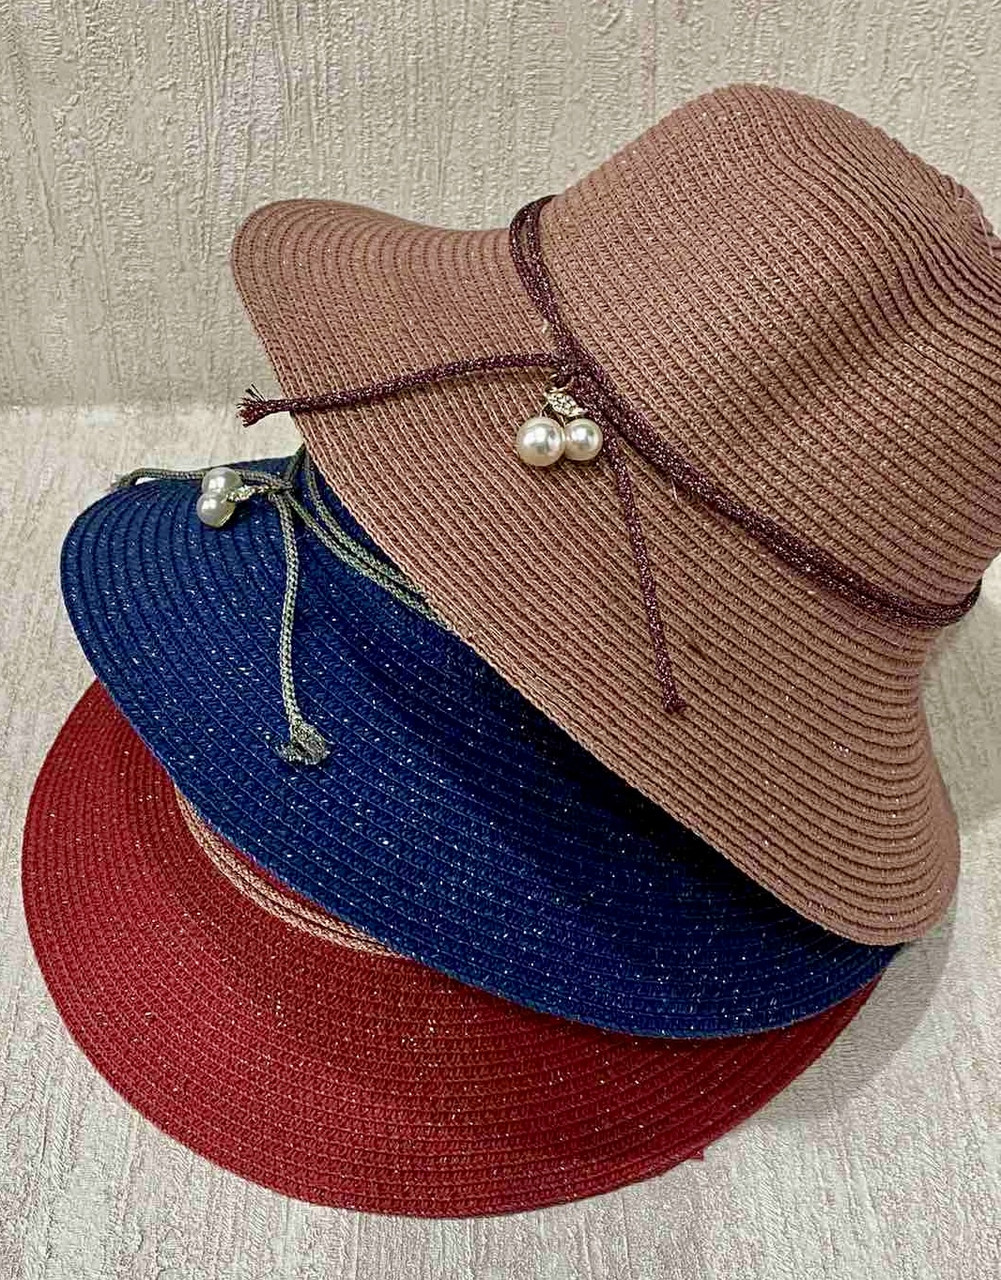 Жіночий капелюх